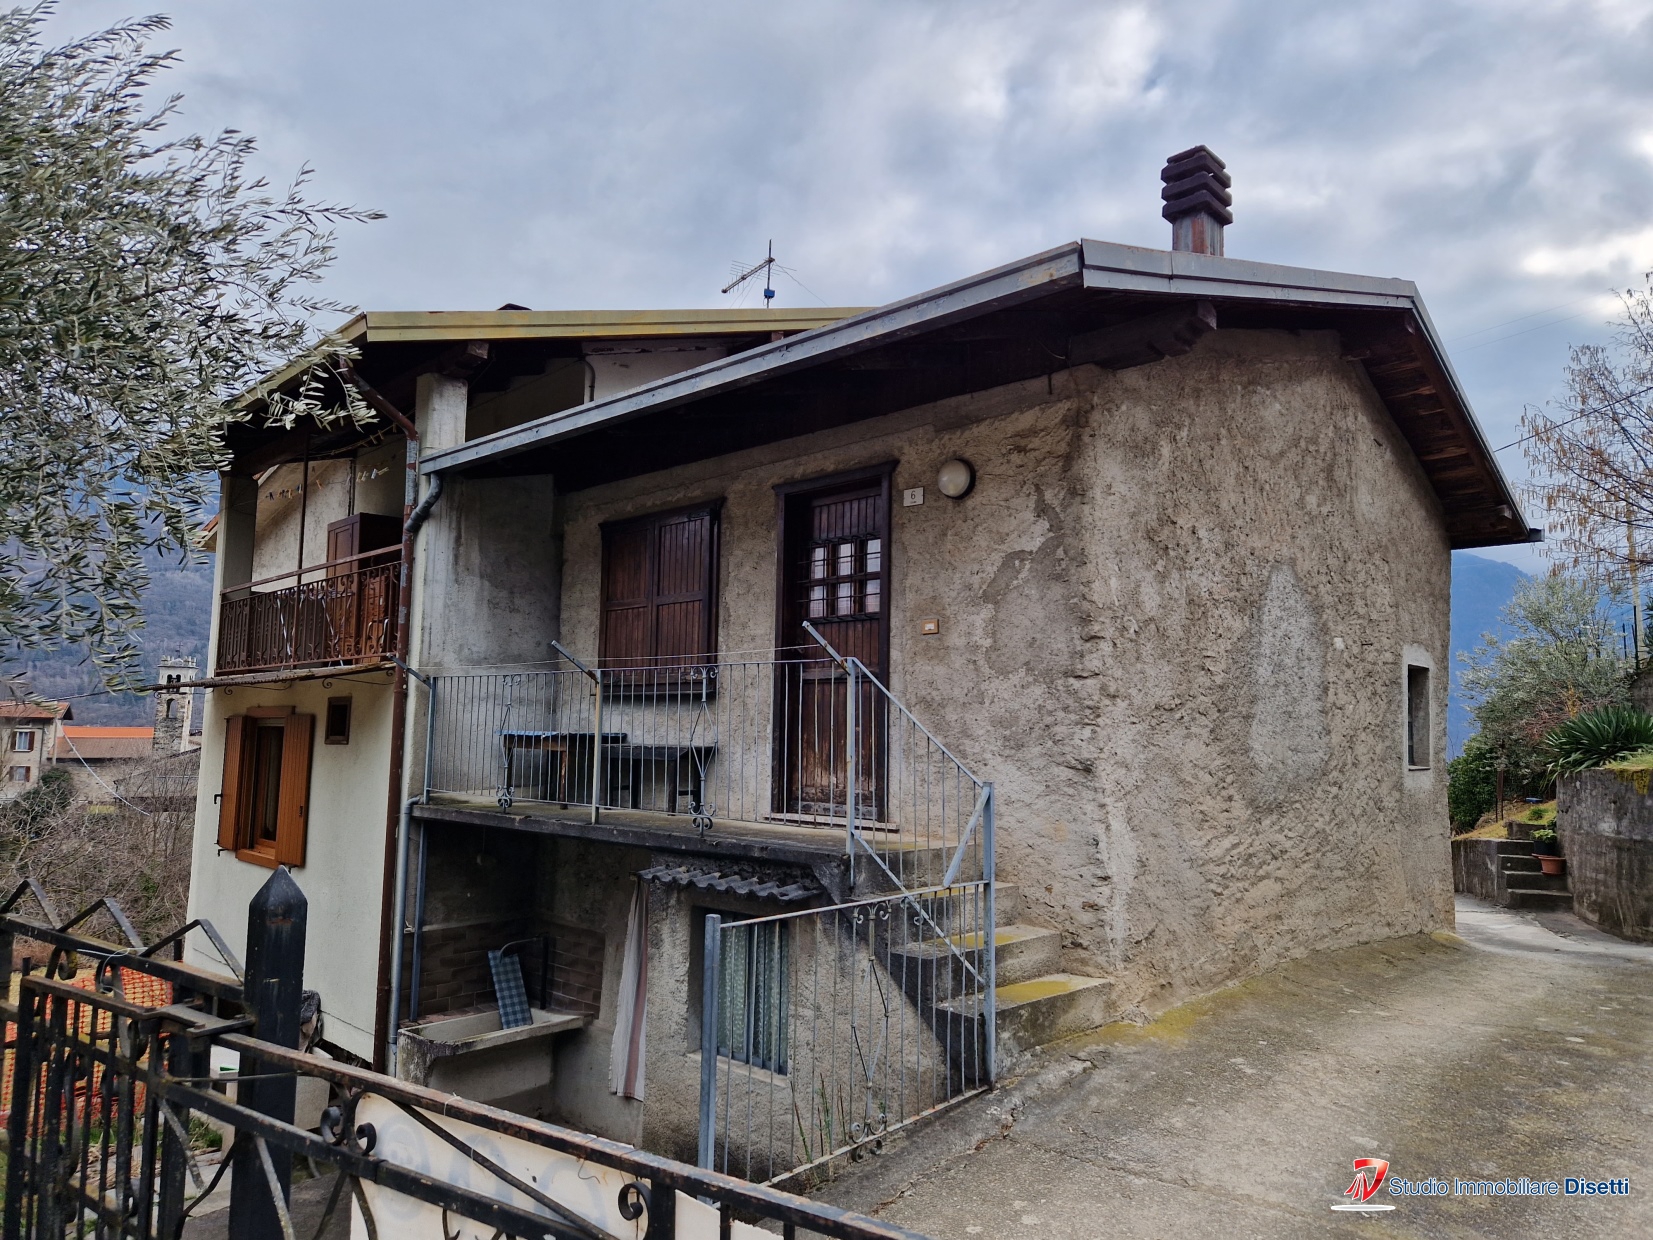 Rustico / Casale in vendita a Capo di Ponte, 3 locali, prezzo € 35.000 | PortaleAgenzieImmobiliari.it